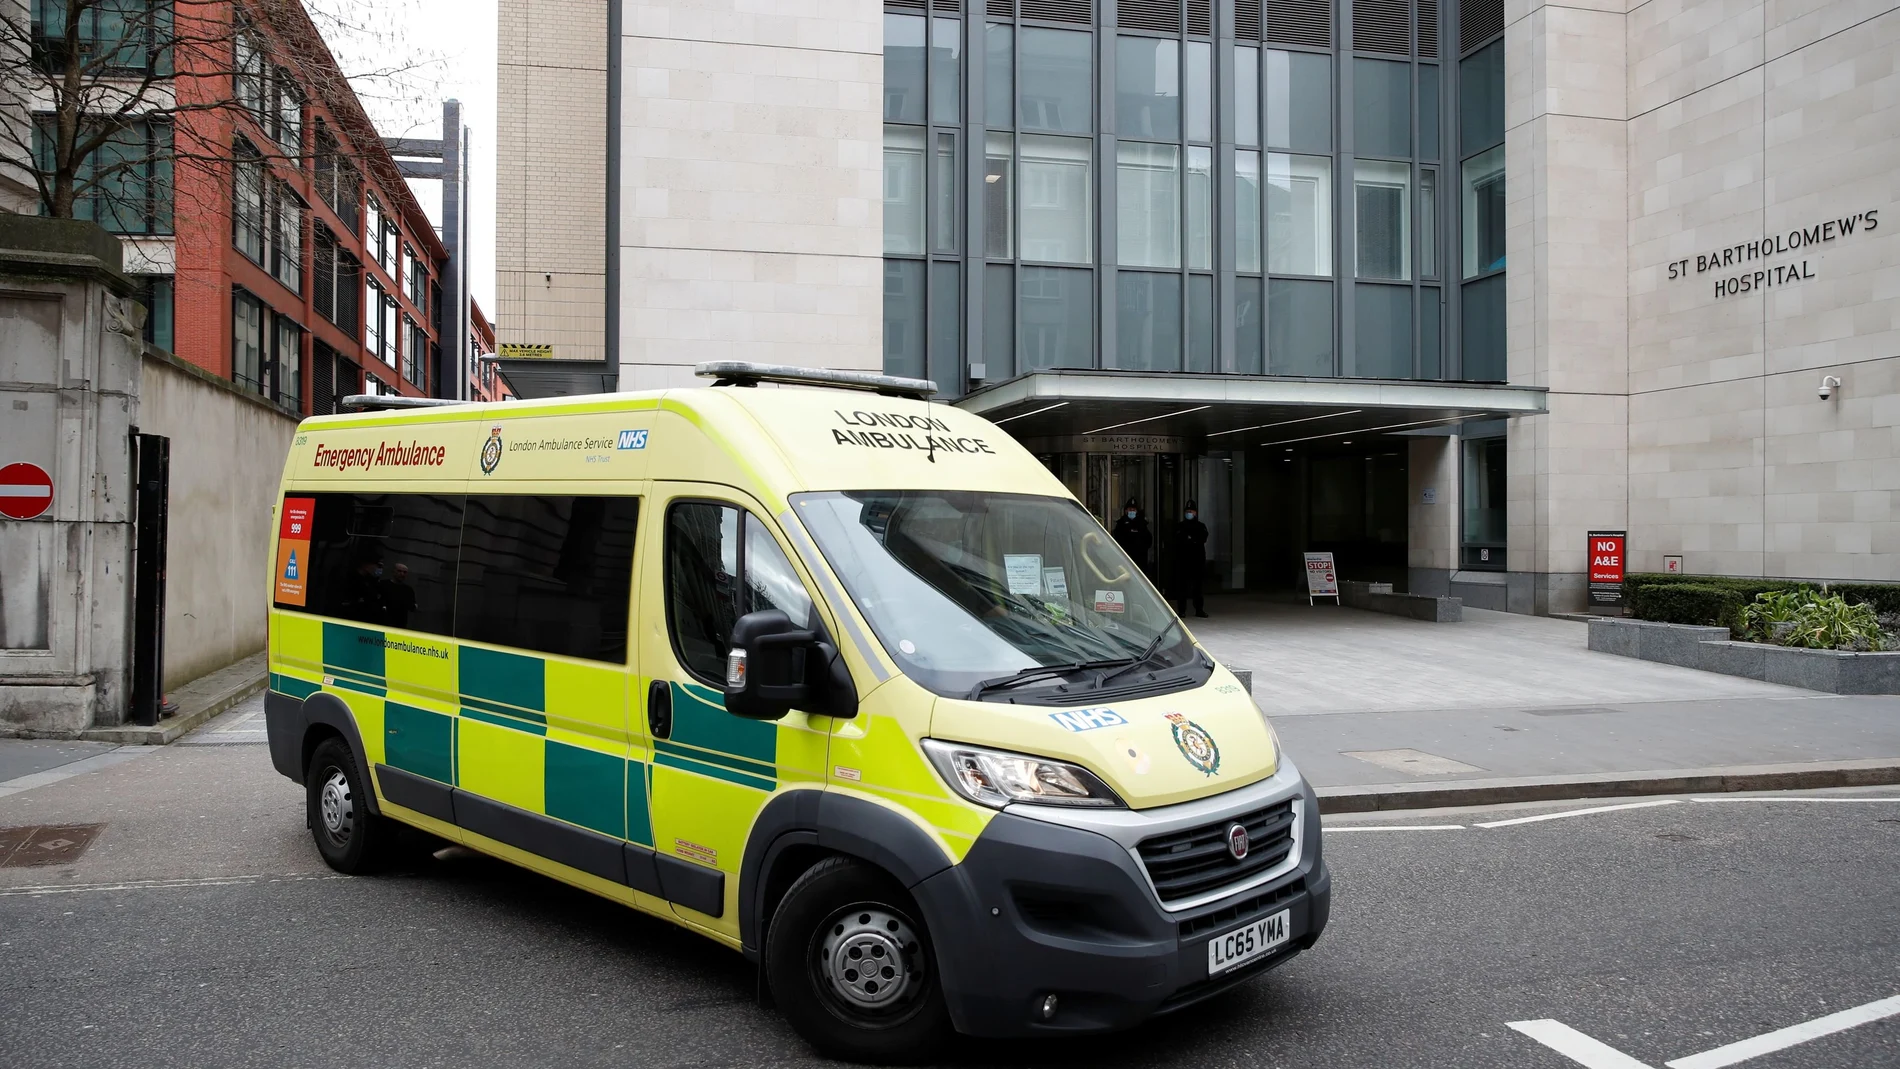 Una ambulancia que se cree que transporta al príncipe Felipe de Gran Bretaña sale del Hospital de San Bartolomé y se dirige al Hospital del Rey Eduardo VII en Londres